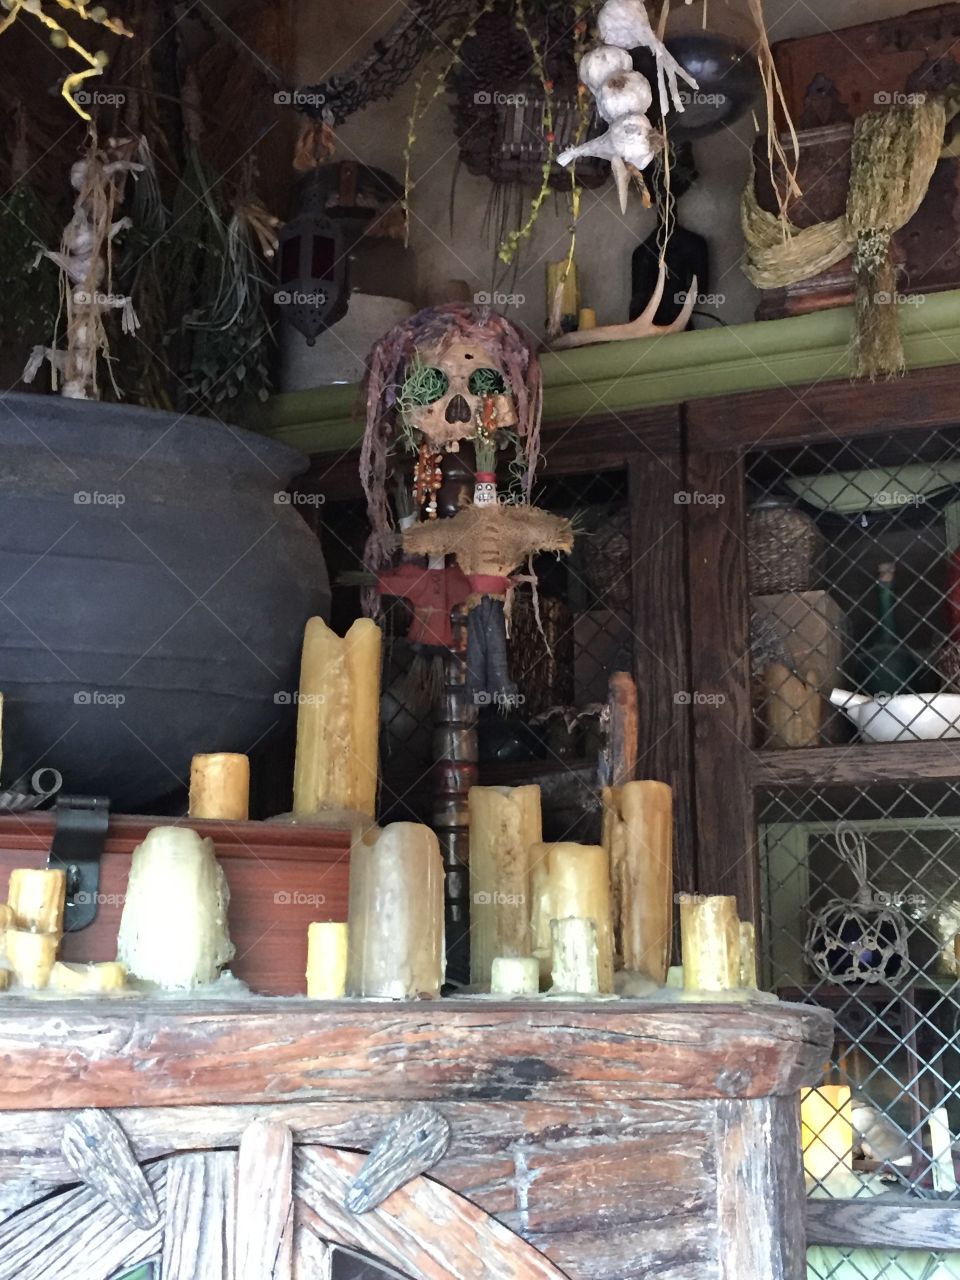 Pirate skull display